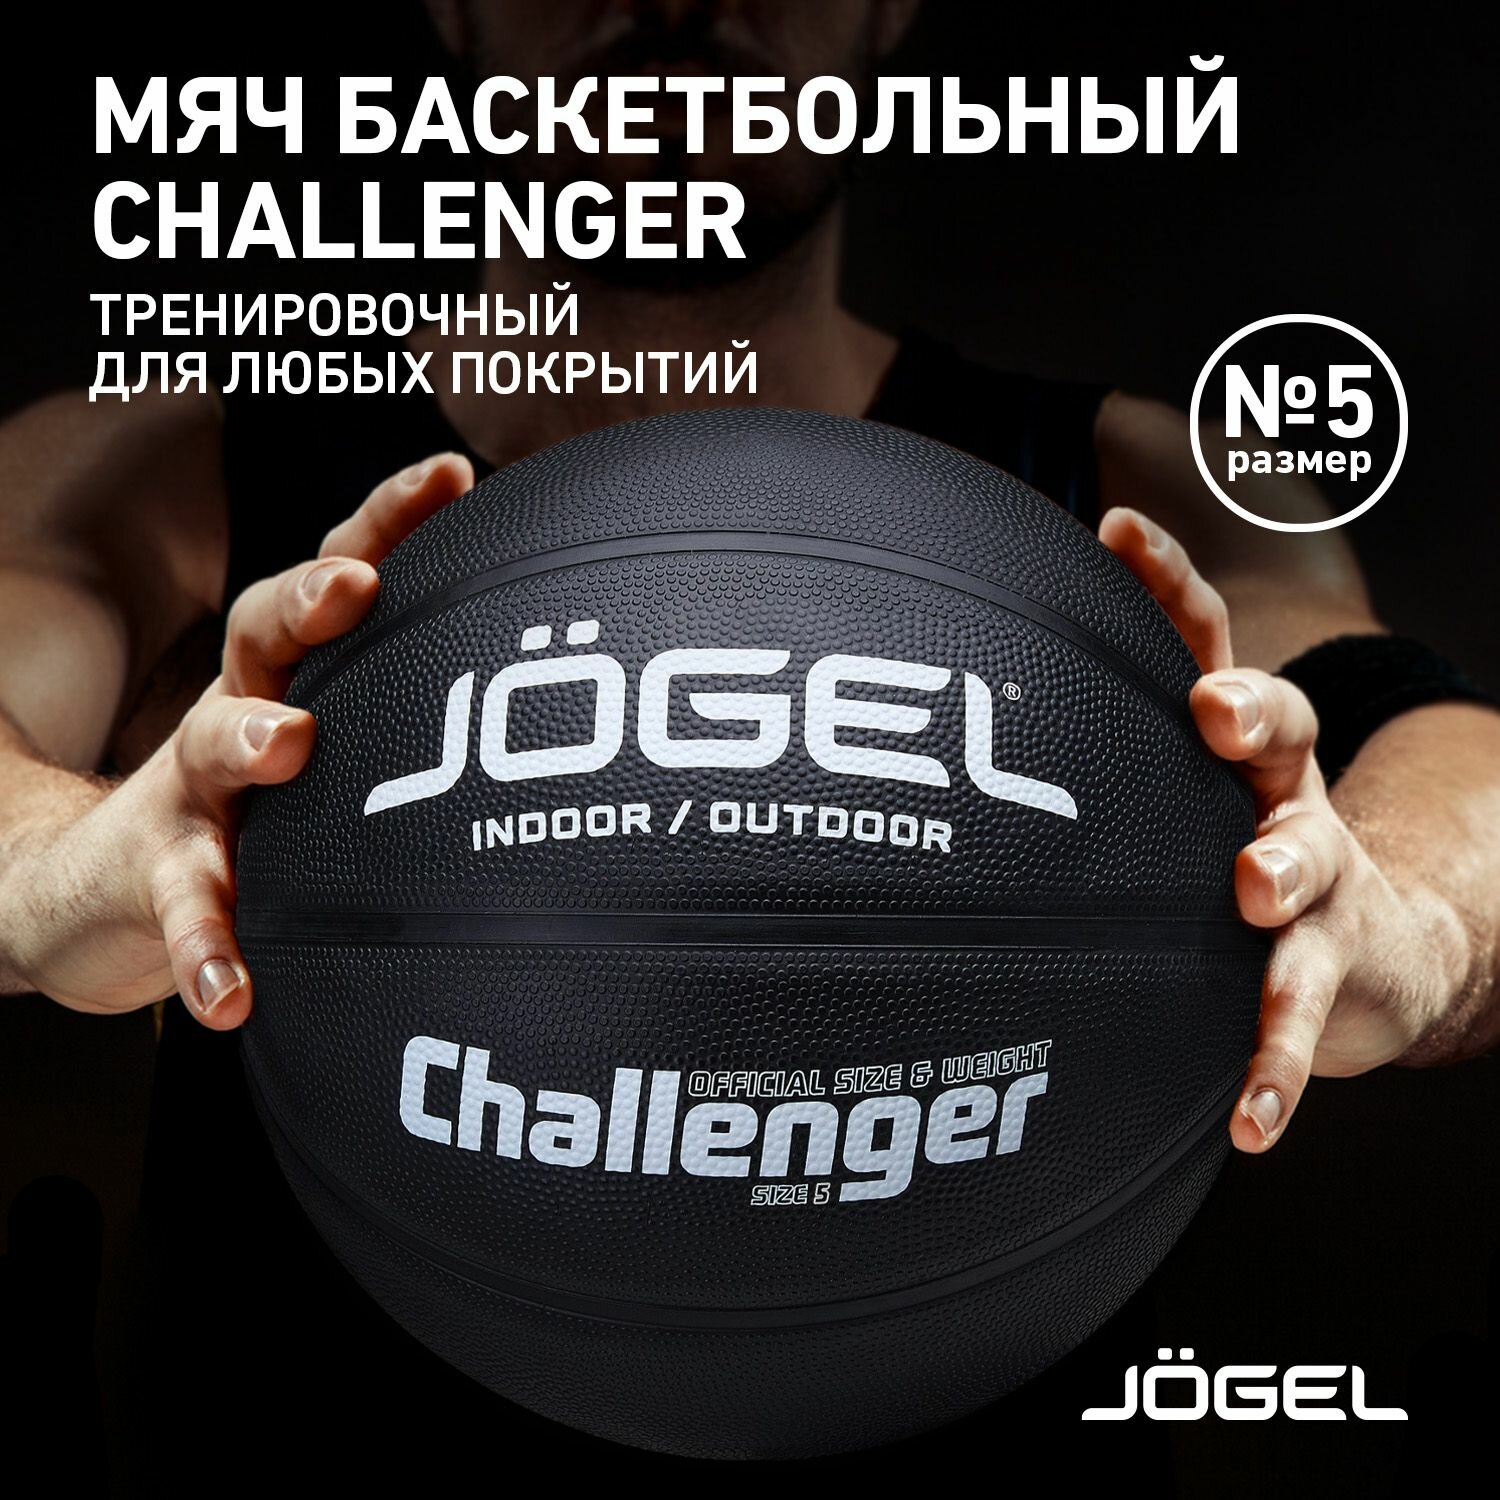 Баскетбольный мяч Jogel Challenger, цвет черный, размер 5